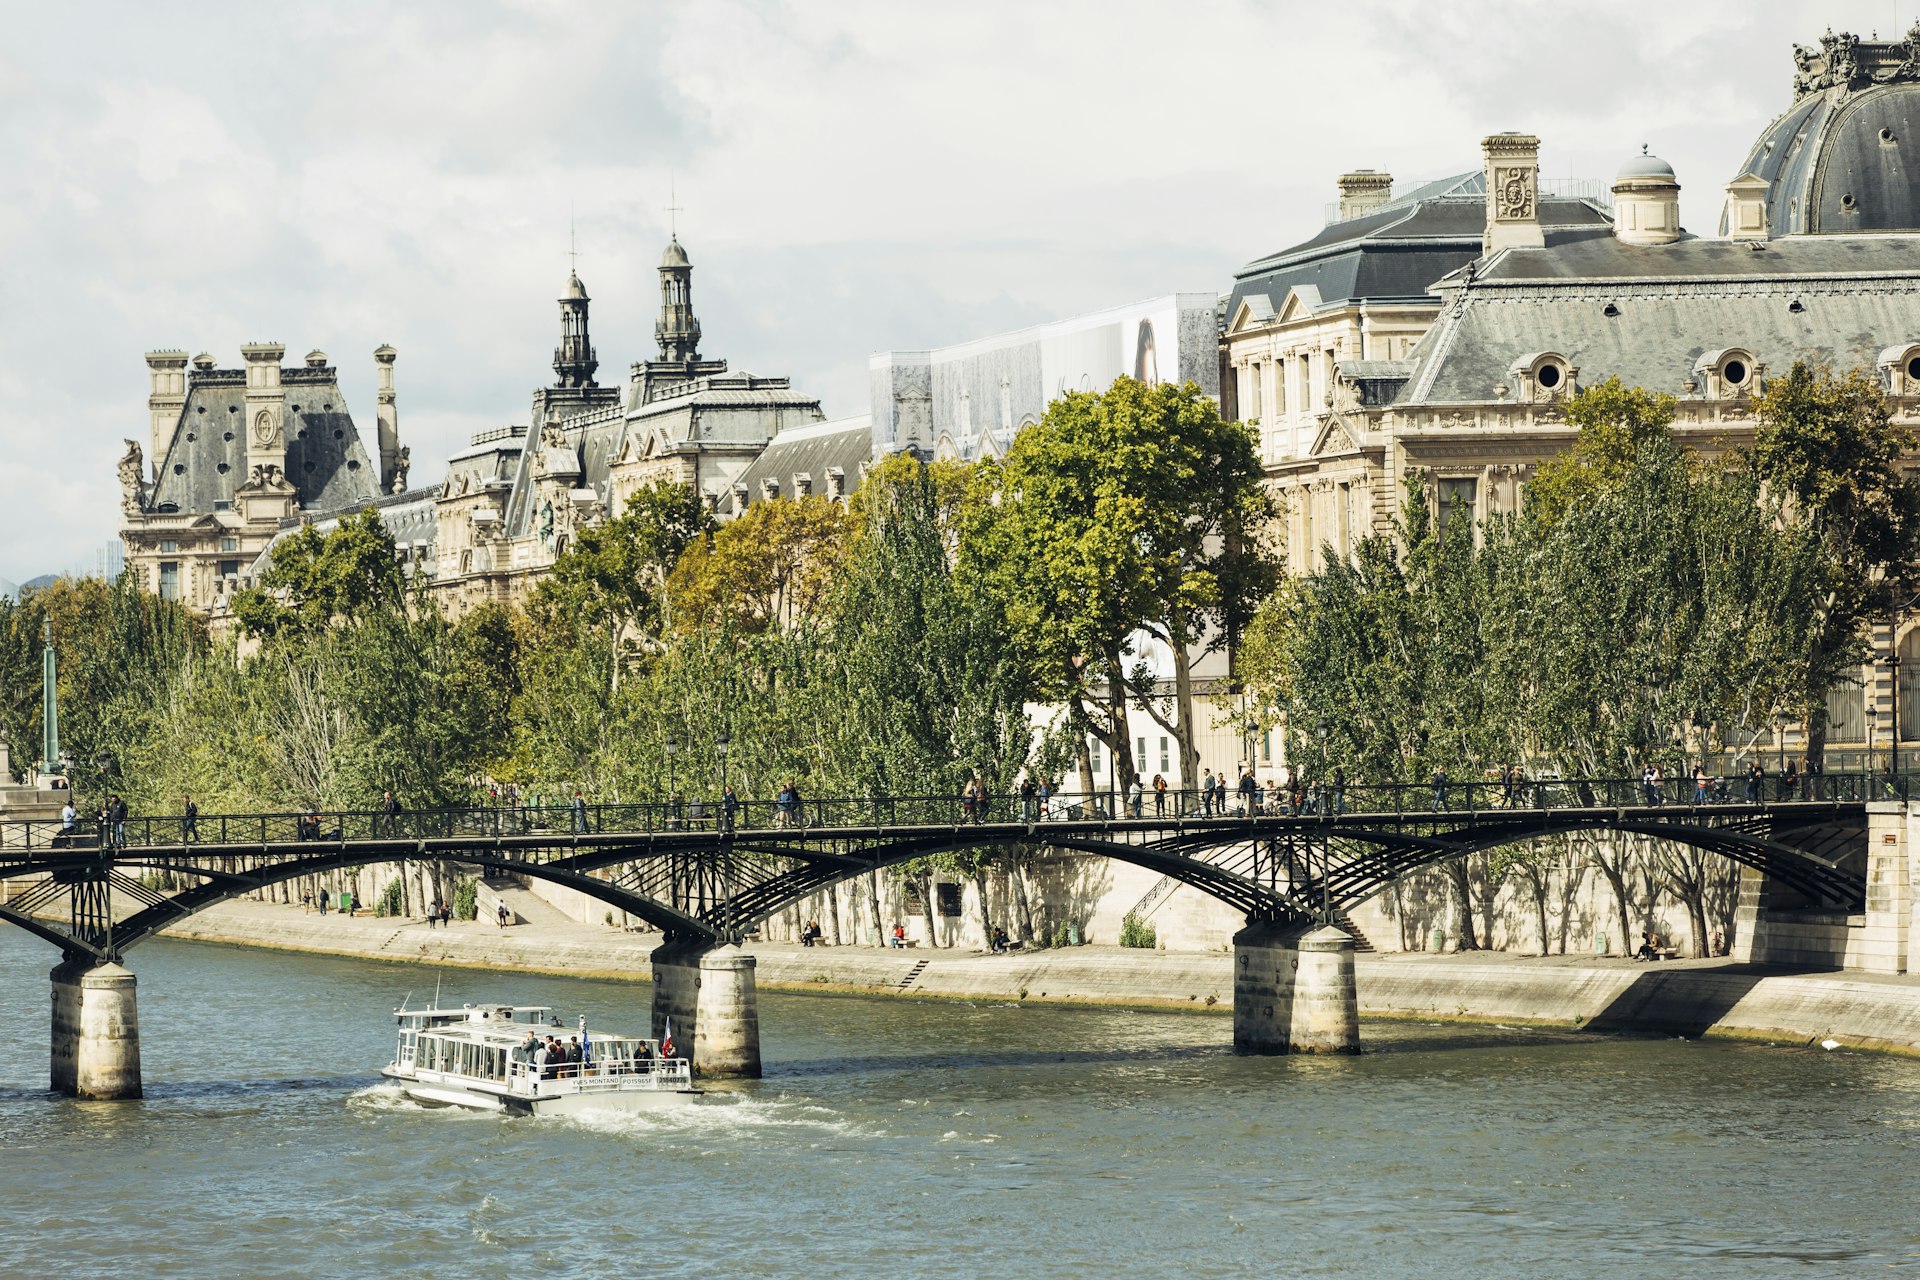 The pedestrian Pont des Arts crosses the River Seine, linking the Palais du Louvre (shown) and the Institut de France